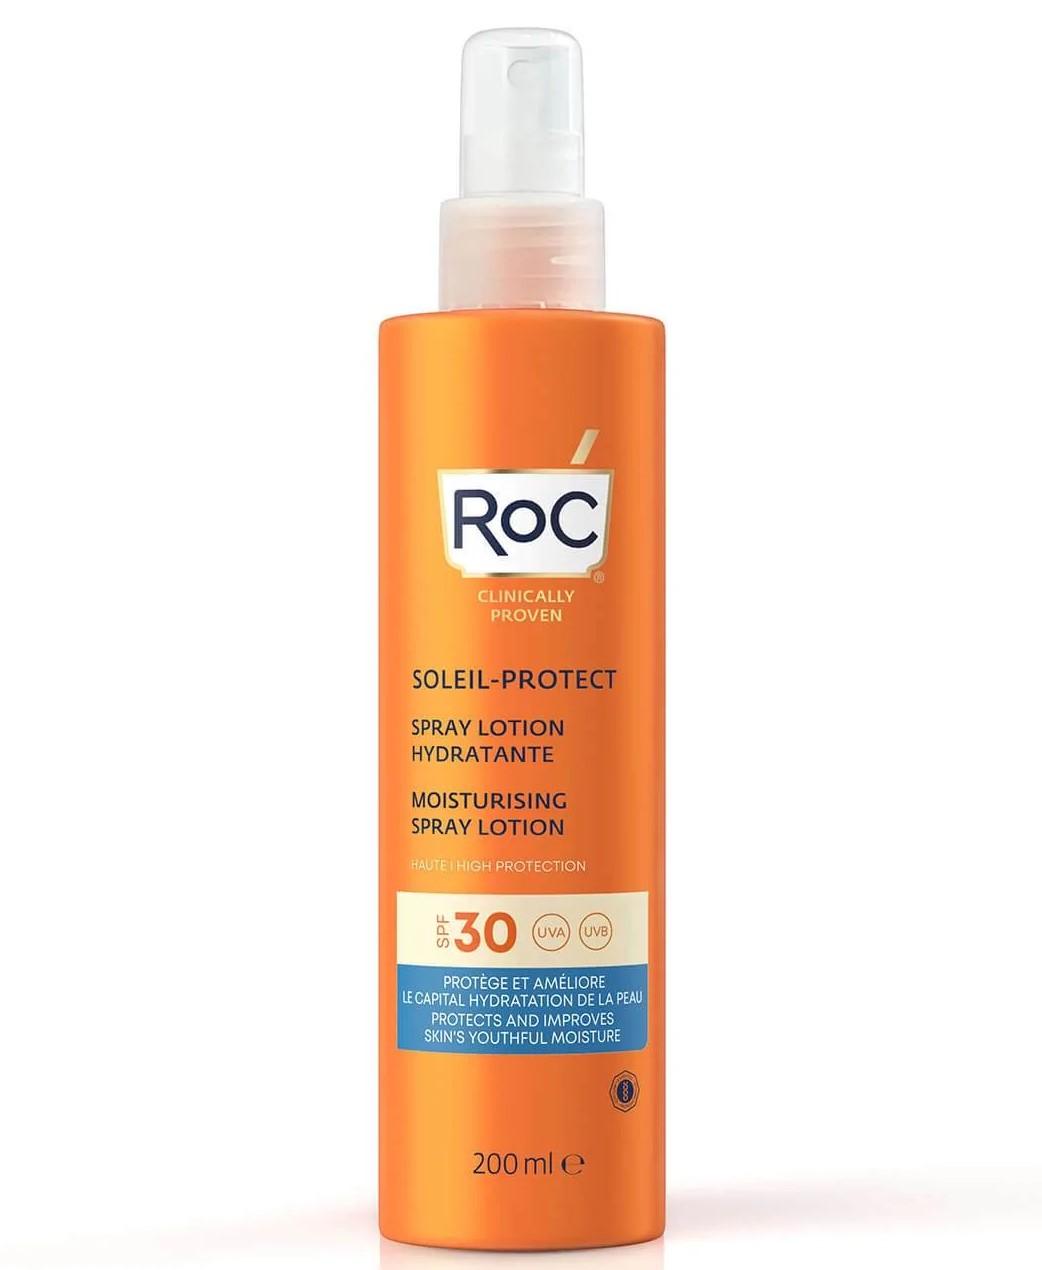 ROC Soleil-Protect Spray Hidratante SPF30. Esta crema asegura una alta protección solar mientras mantiene la hidratación natural de la piel. Tiene una textura aterciopelada y no grasa que no deja residuos blancos.